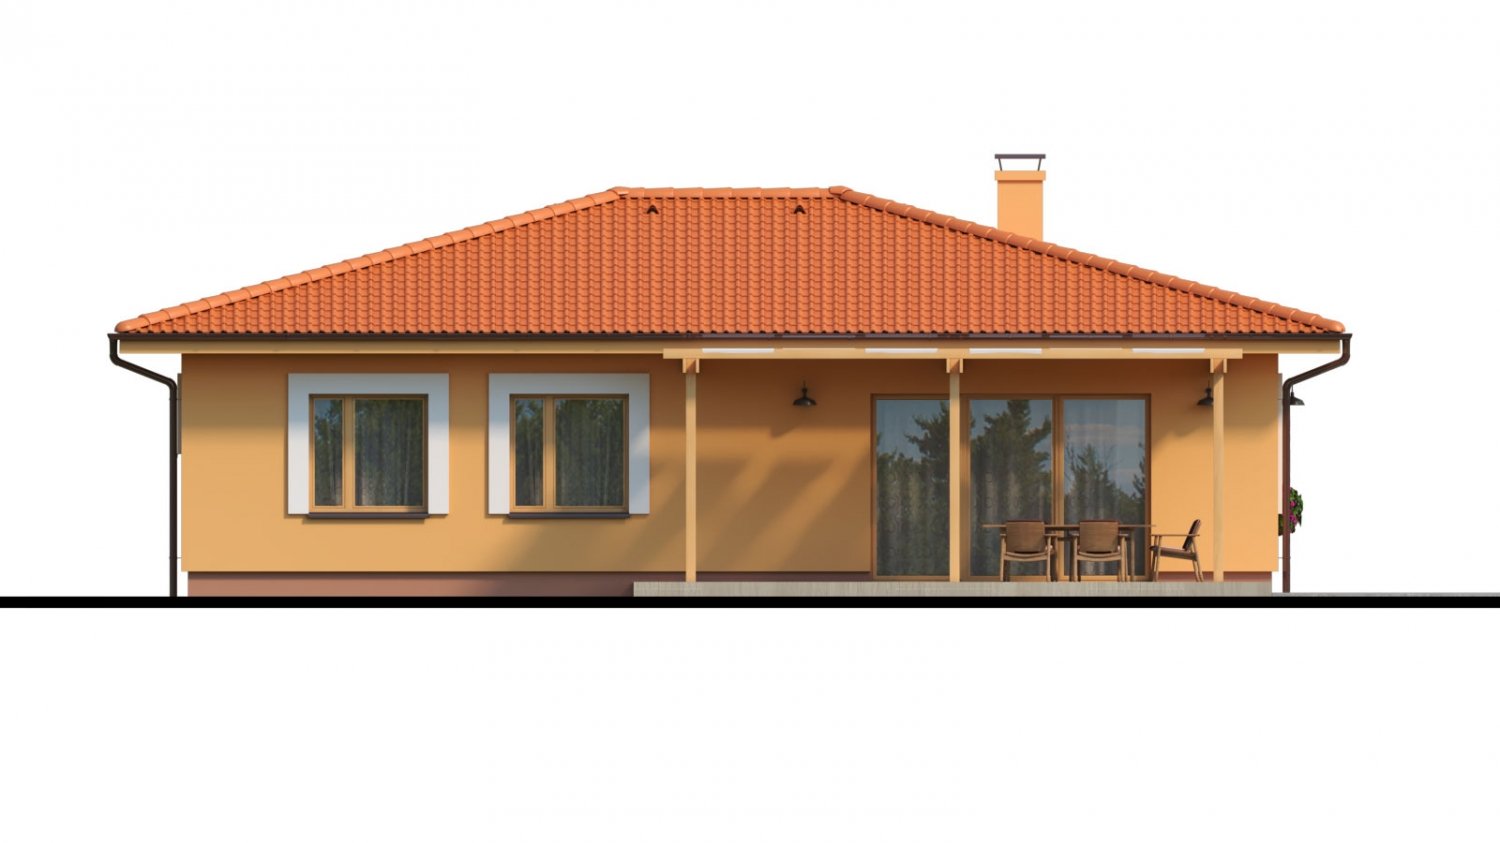 Zrkadlový pohľad 3. - Moderní zděný bungalov s valbovou střechou a oddělenou denní a noční částí, s možností zrealizovat plochou střechu.